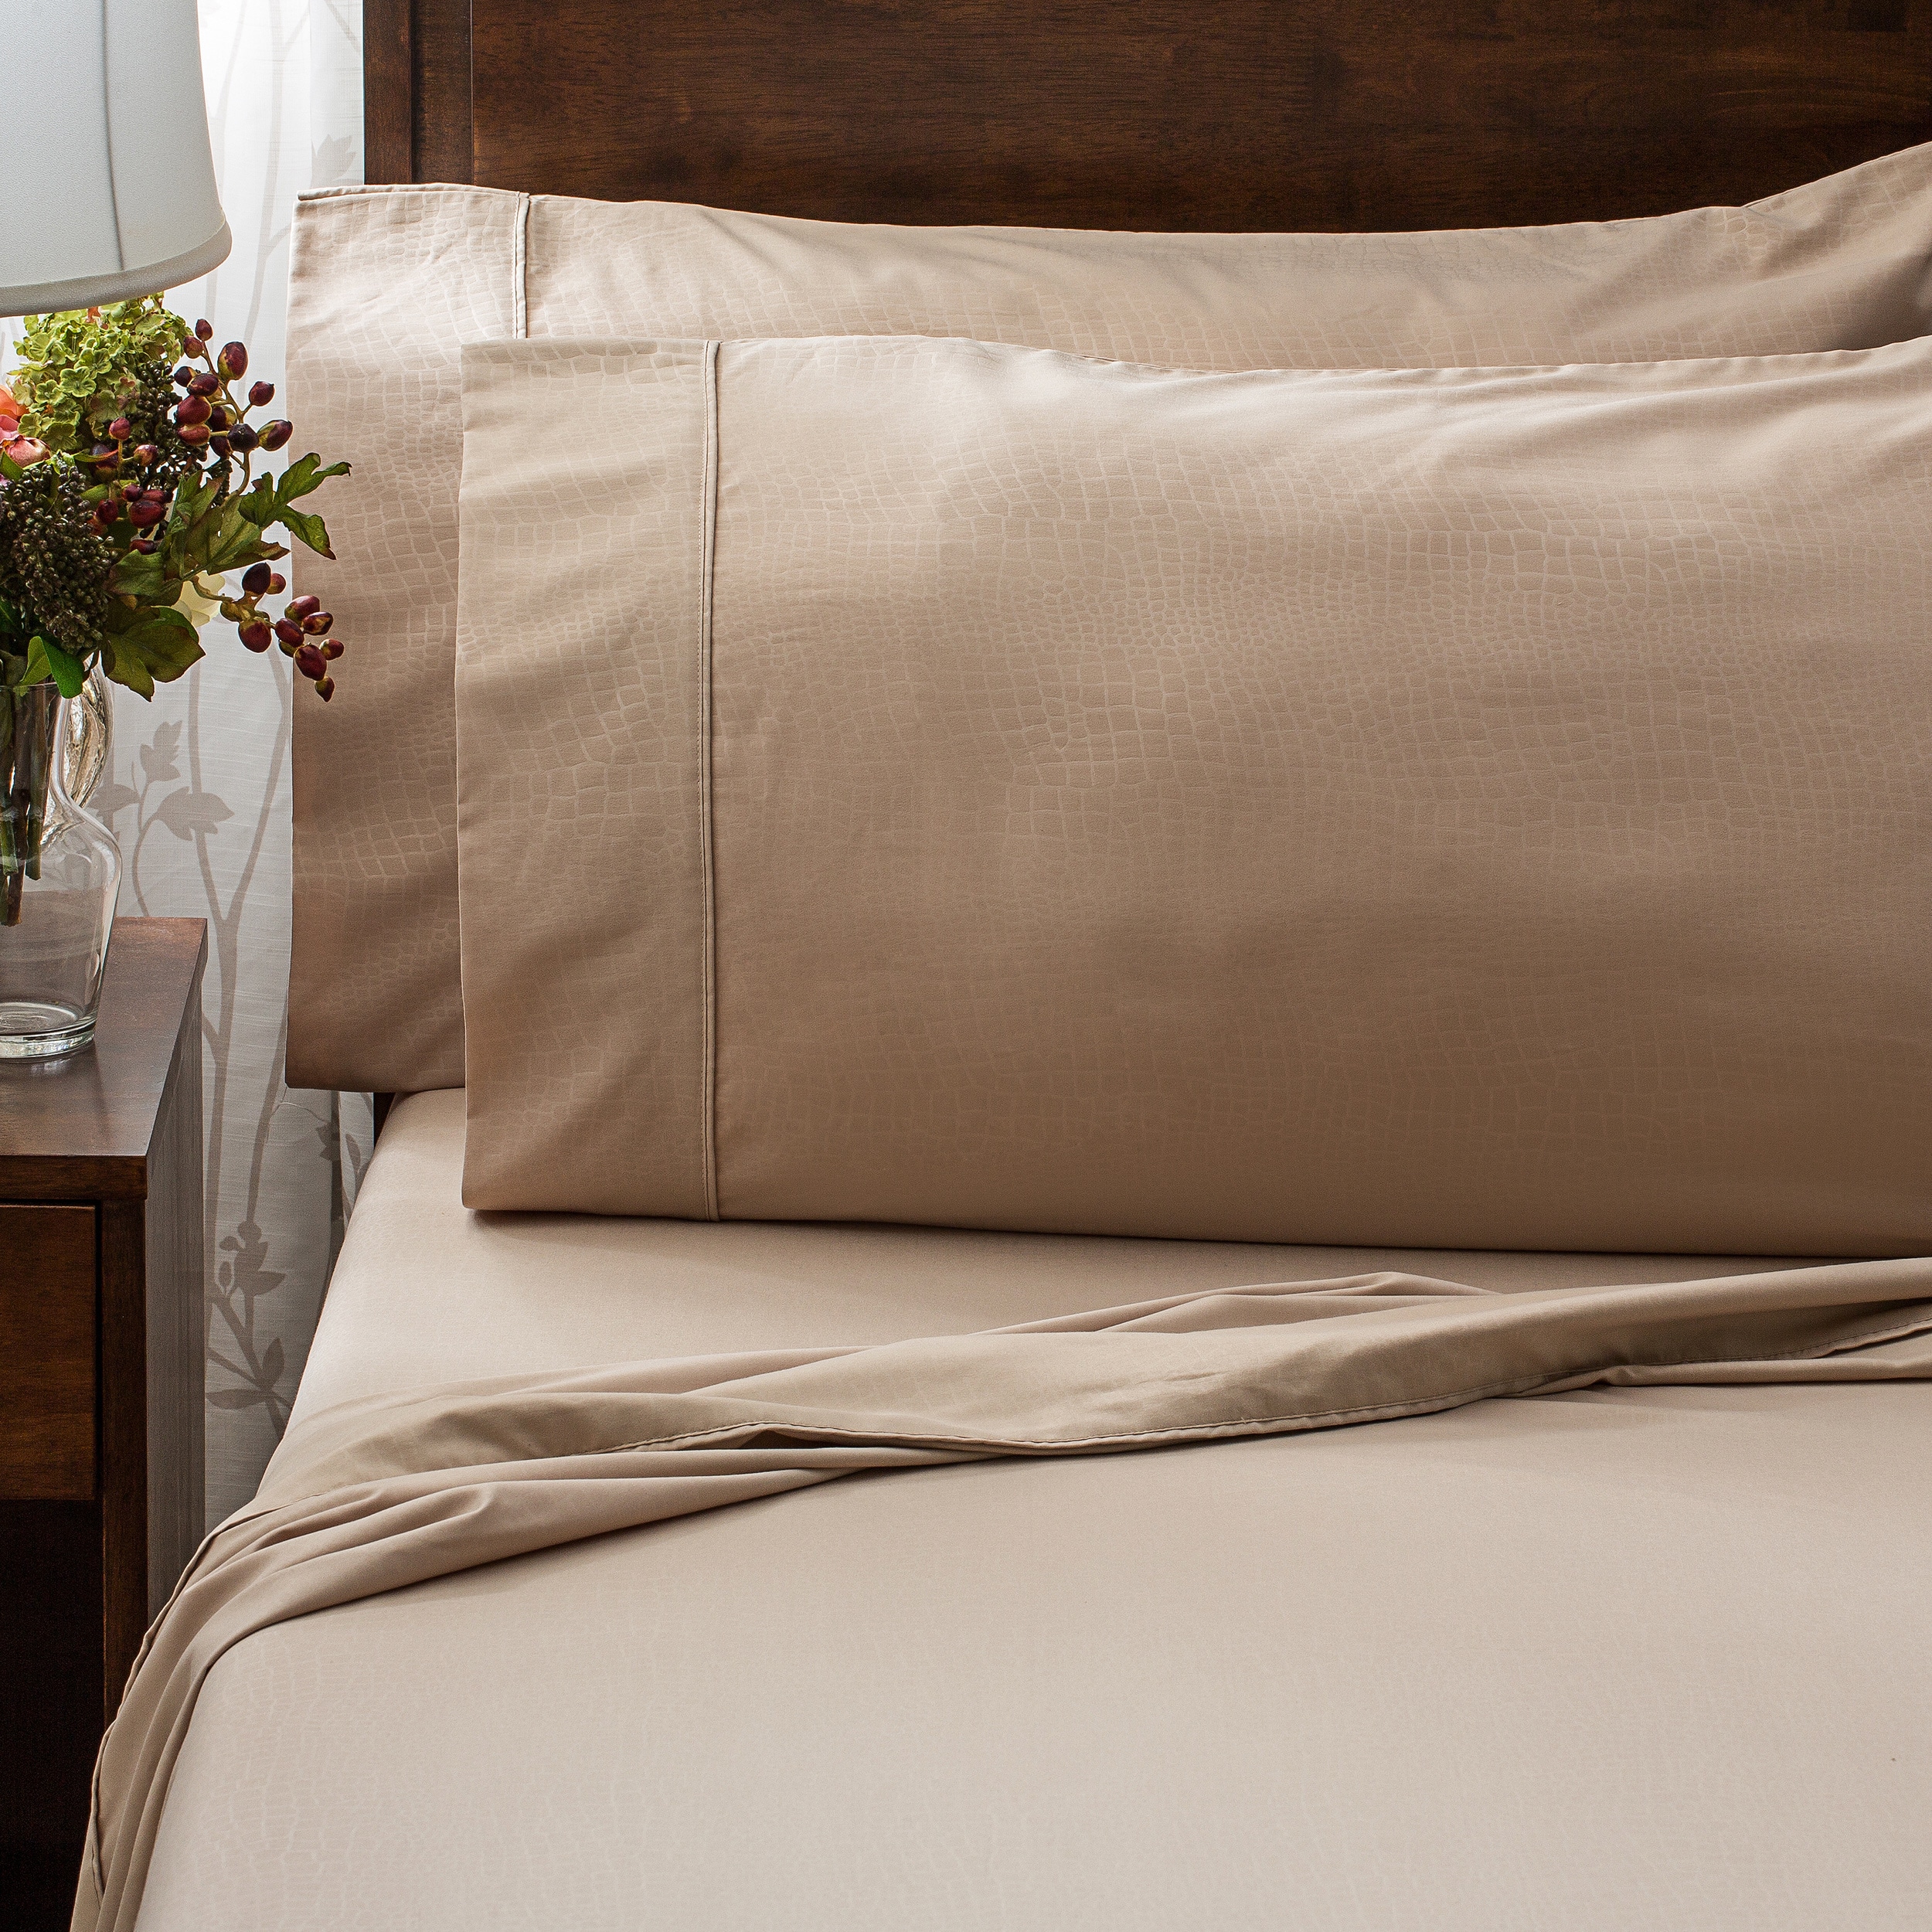 Luxury Bed Sheet Set Solid Brushed Microfiber Wrinkle-Free sheet sets 